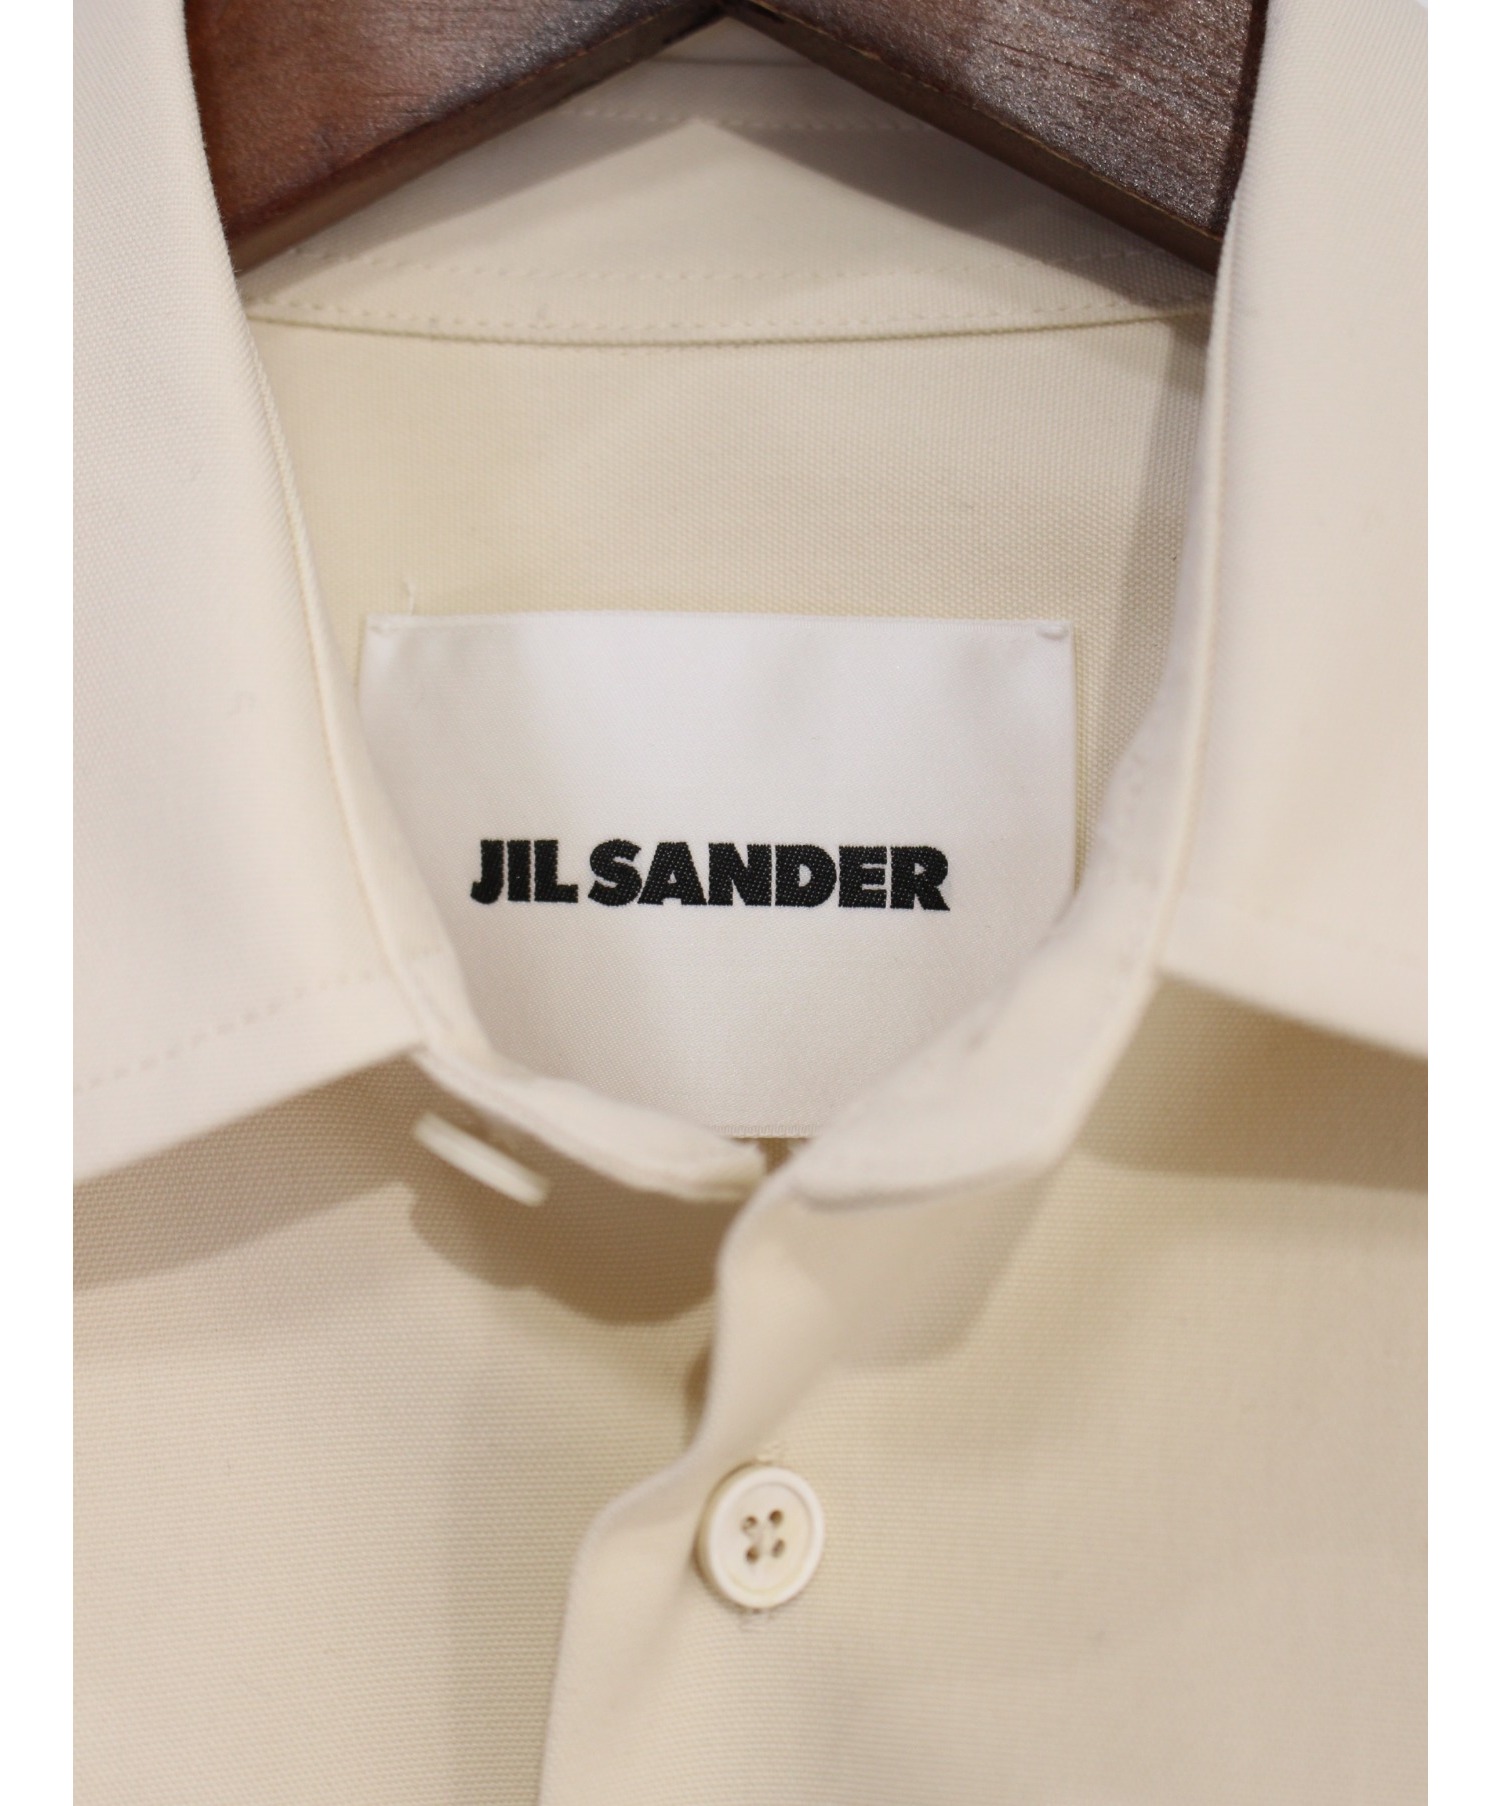 JIL SANDER (ジルサンダー) キャンバスシャツ ベージュ サイズ:SIZE 38 未使用品